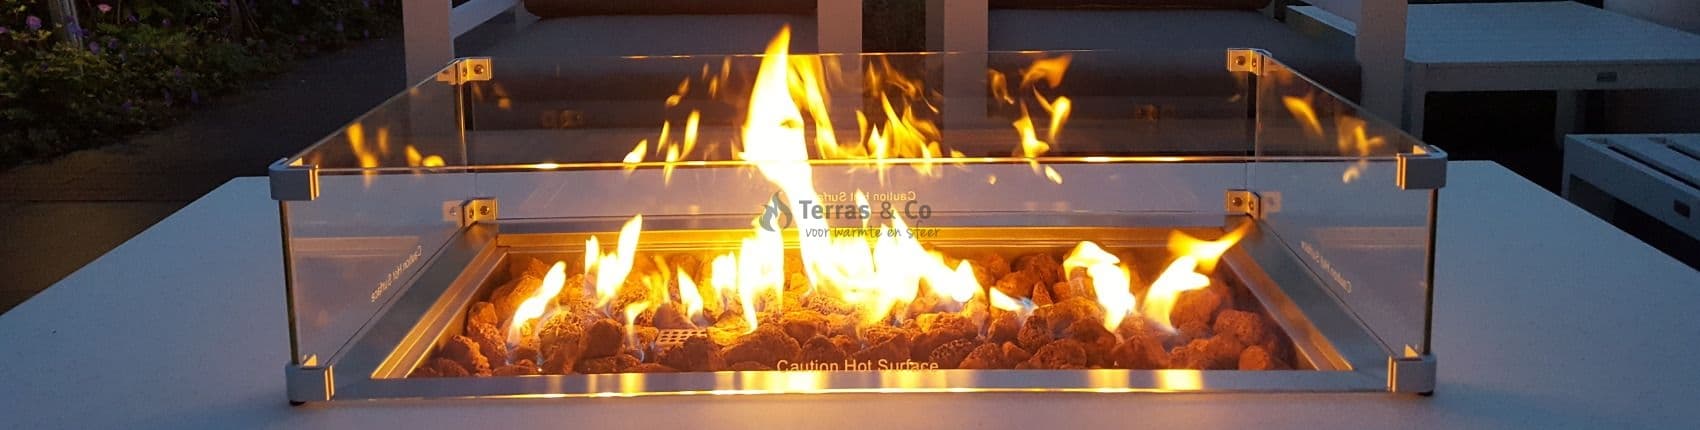 Terras Co | De mooiste Vuurtafels, Inbouwbranders en meer!